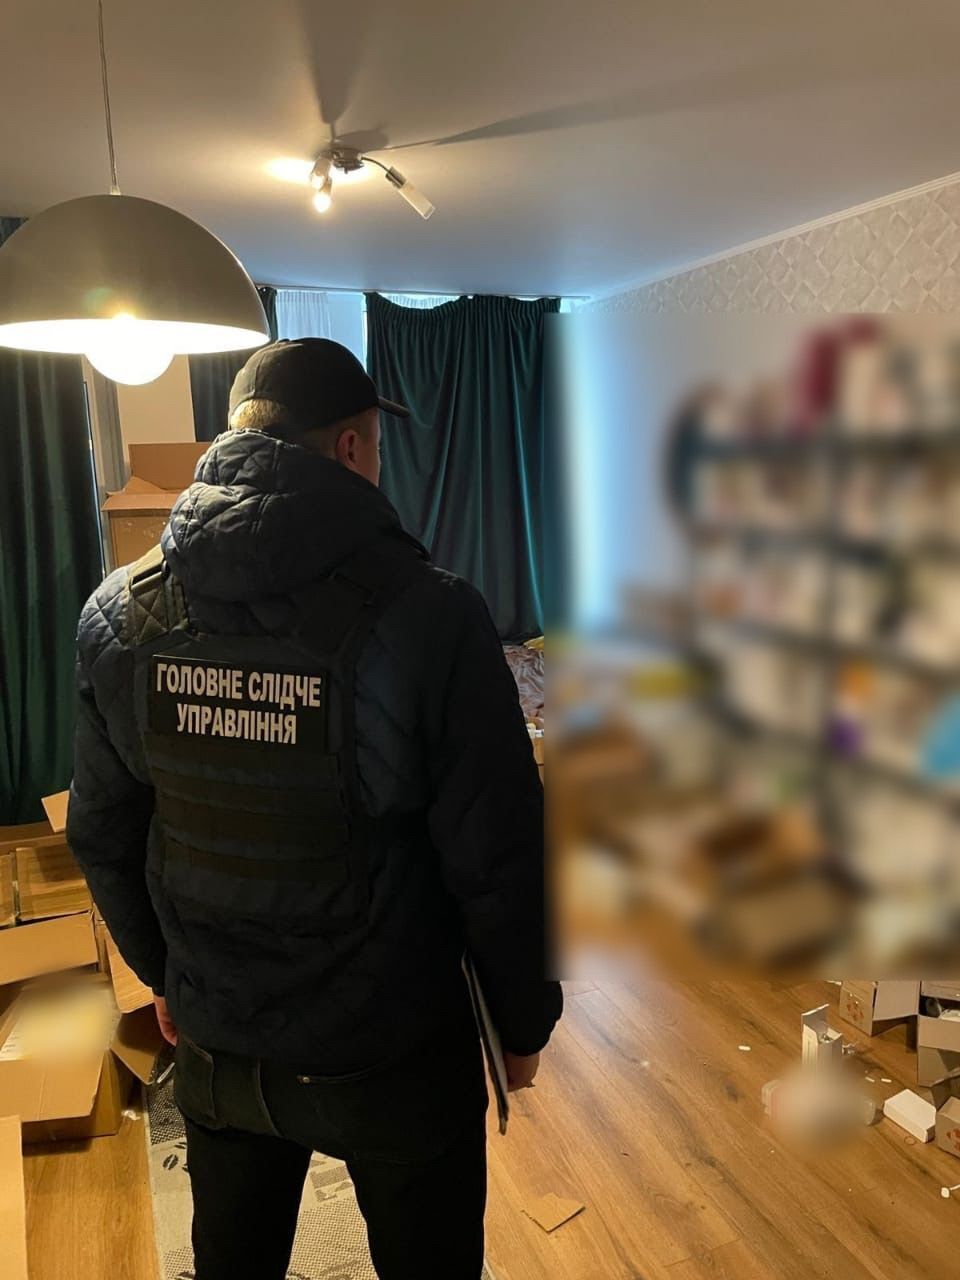 Правоохранители разоблачили схему продажи фальсифицированных лекарств в Украине: зарабатывали на онкобольных. Фото и видео